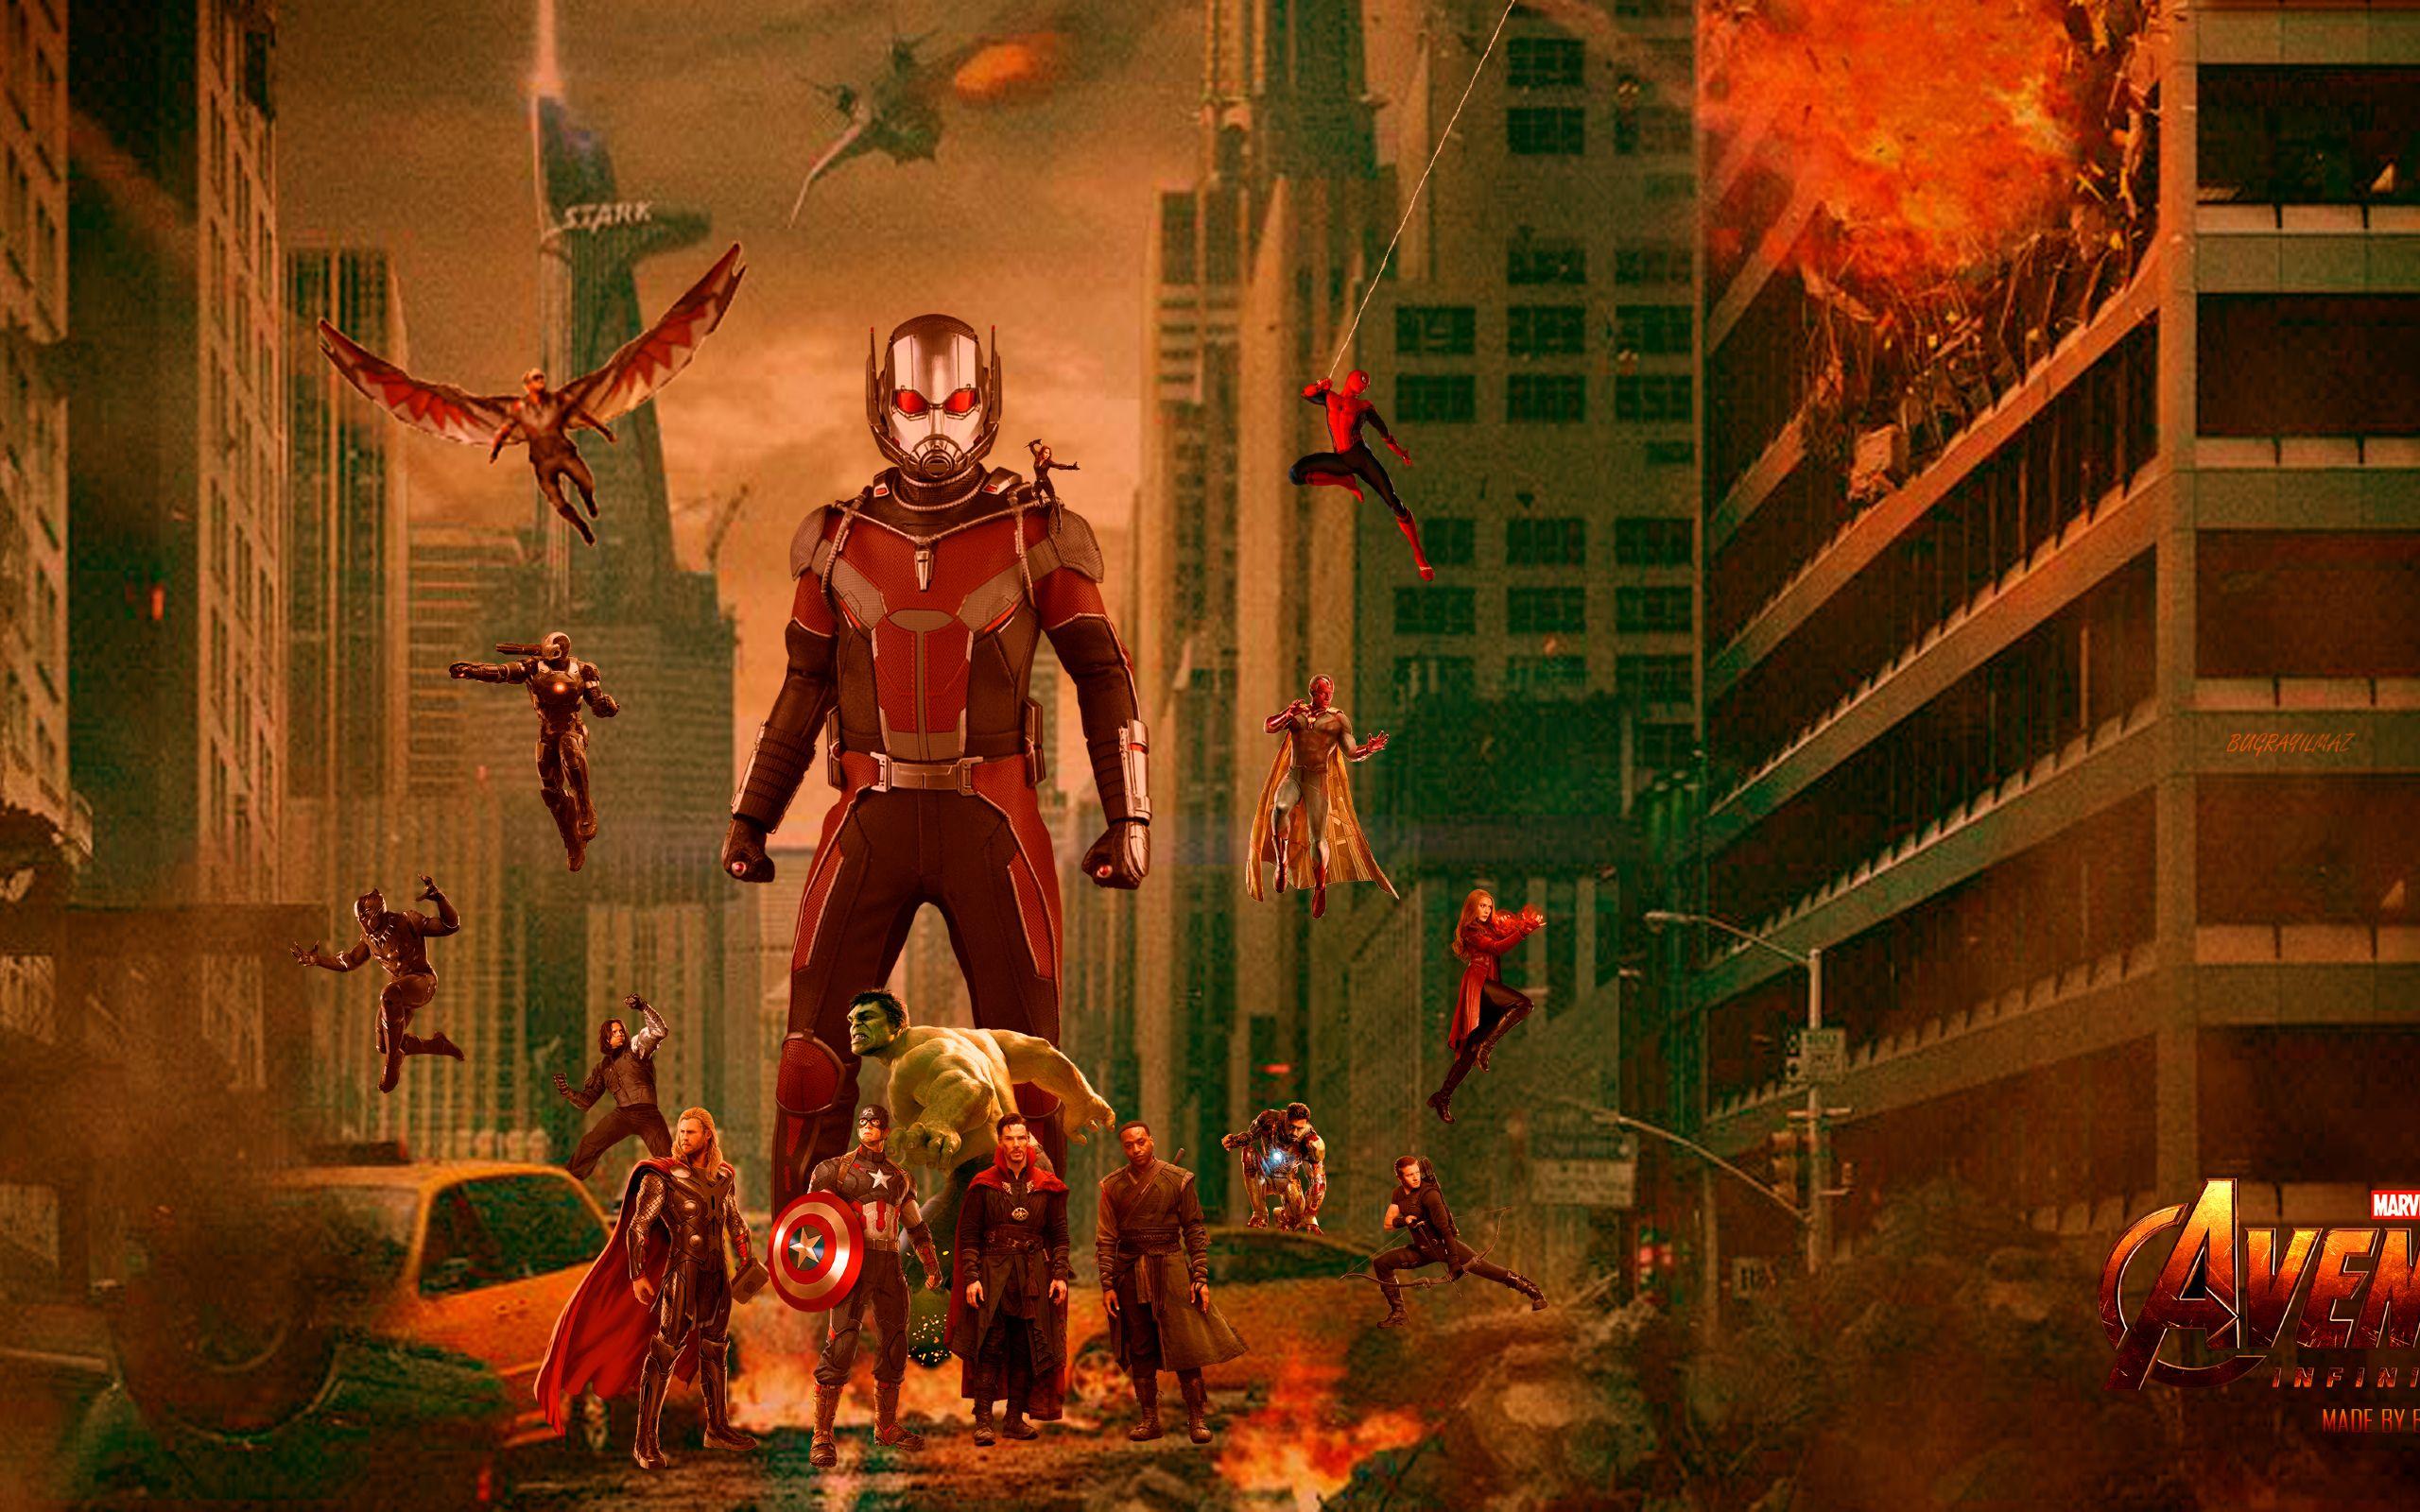 Download Avengers Infinity War Fan Art 2560x1600 Resolution, HD 4K